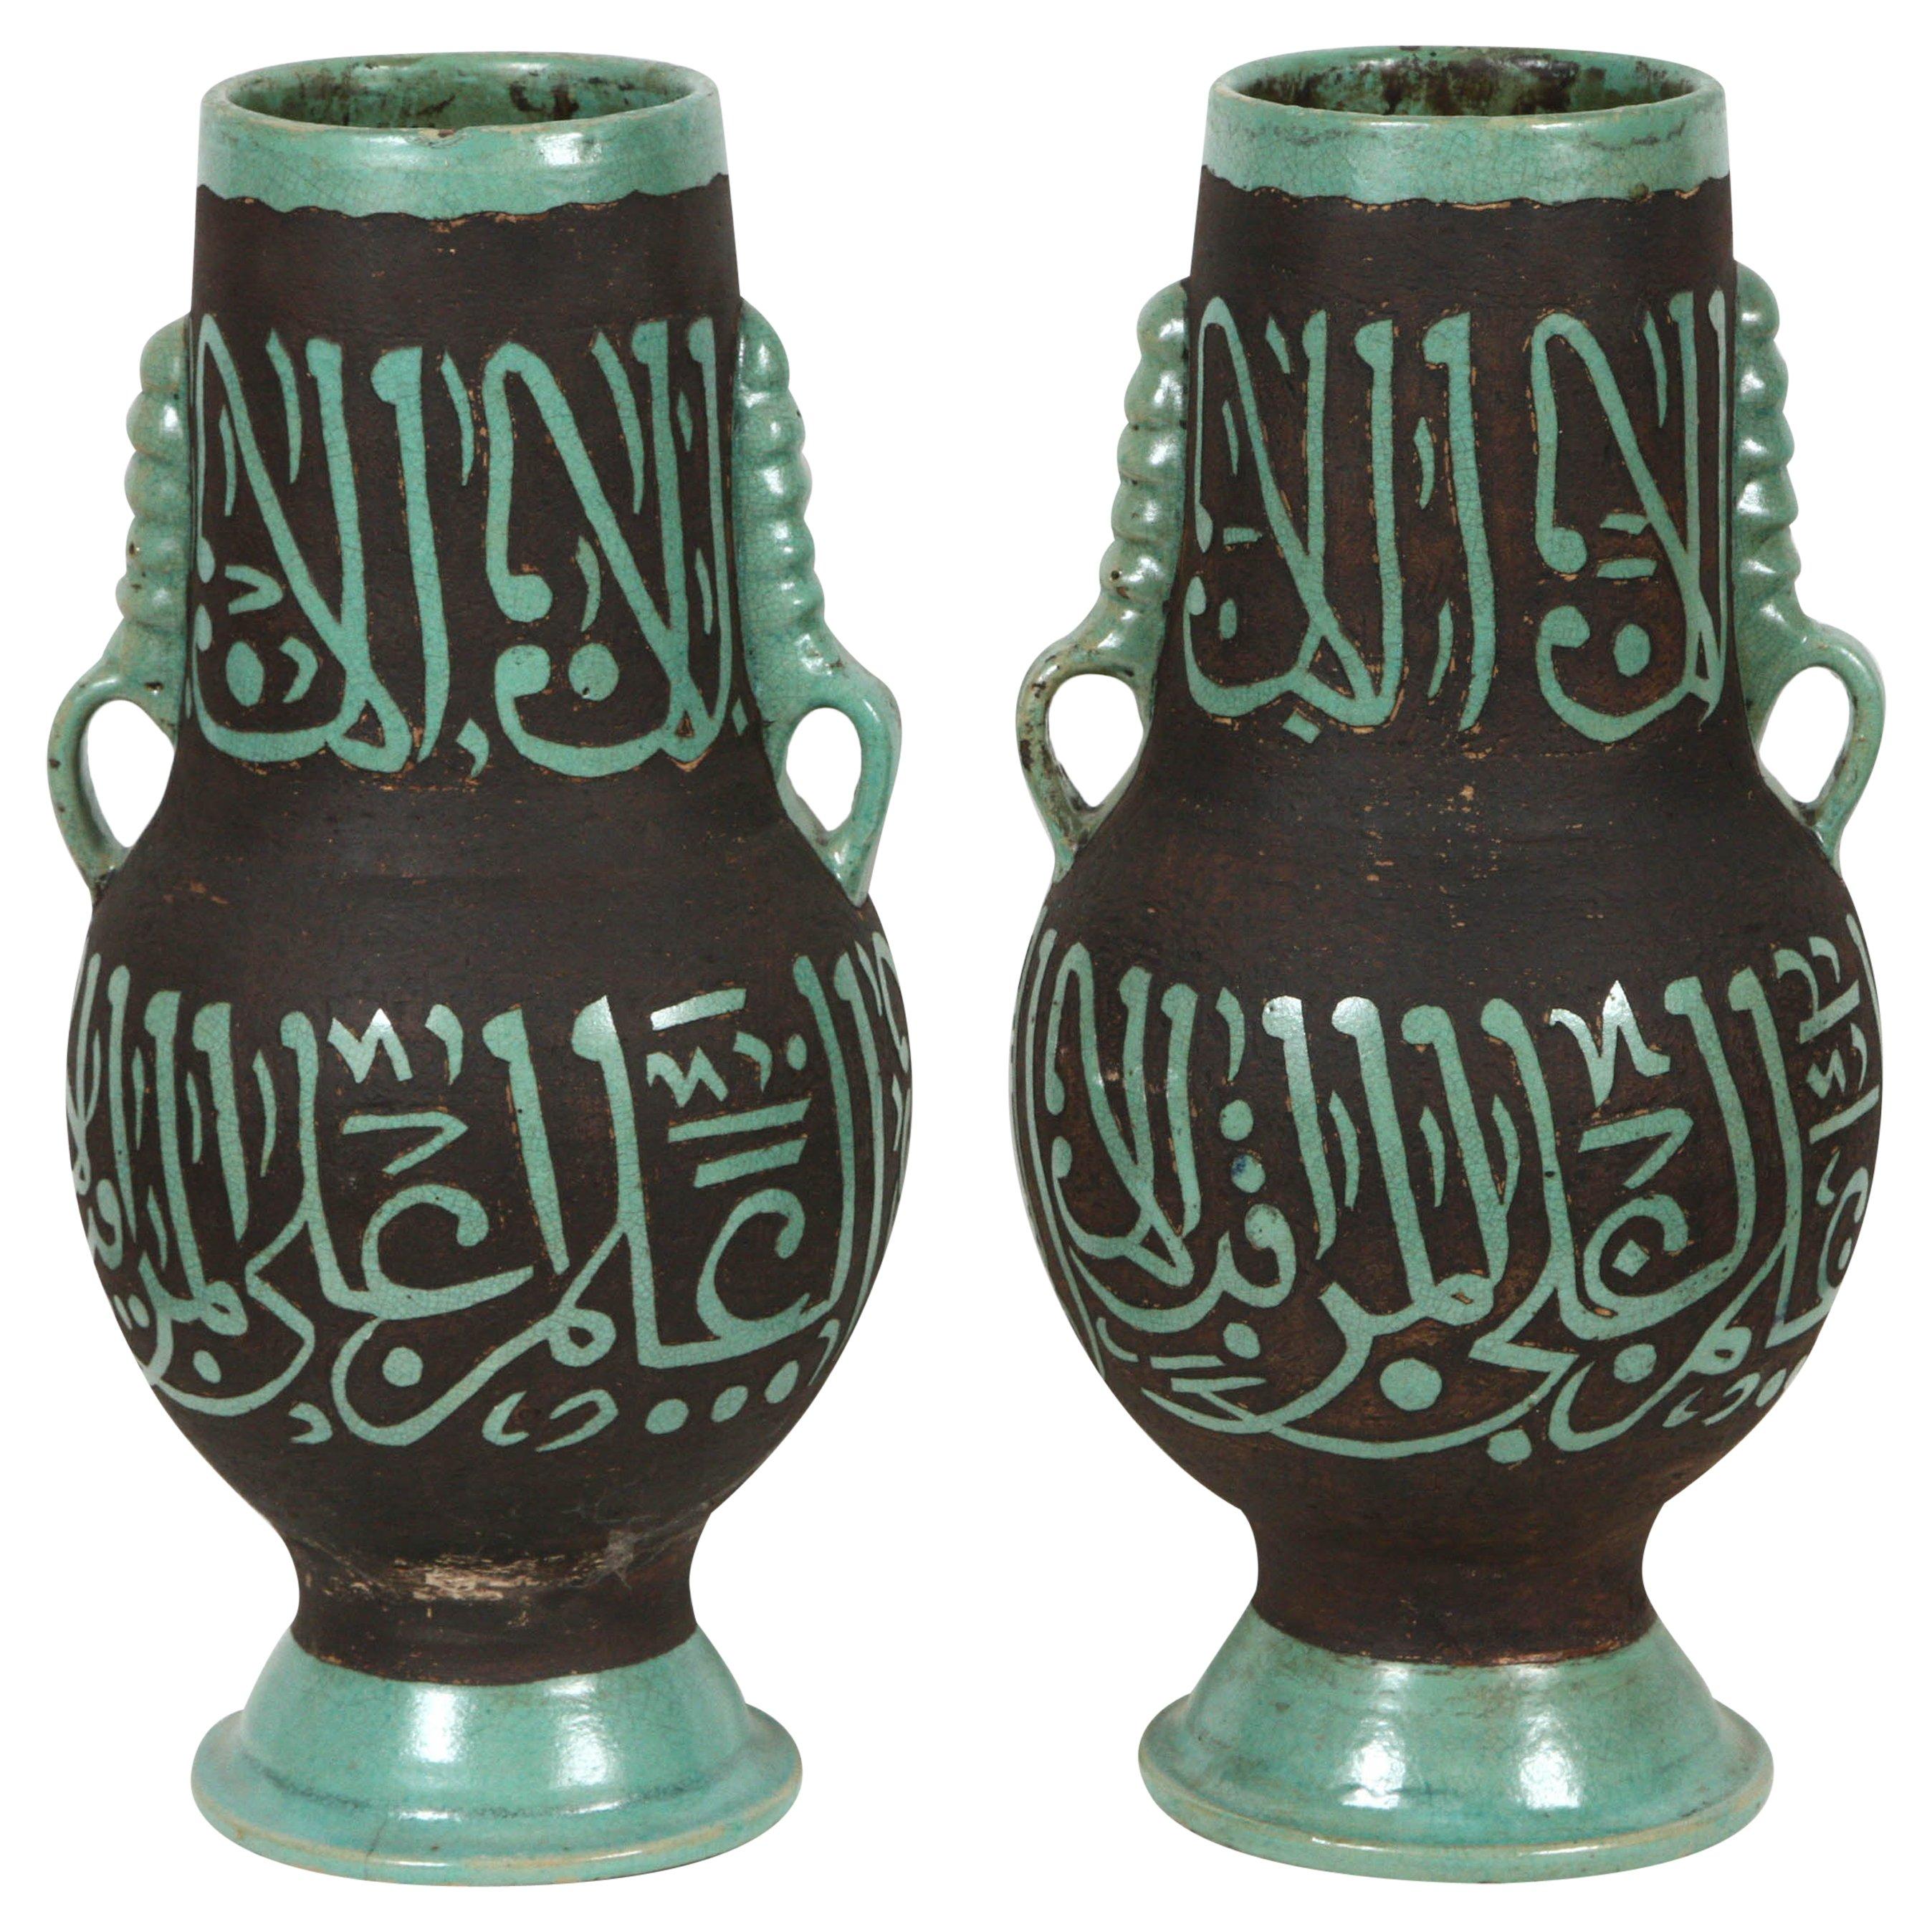 Vases marocains verts avec calligraphie arabe ciselée poésie